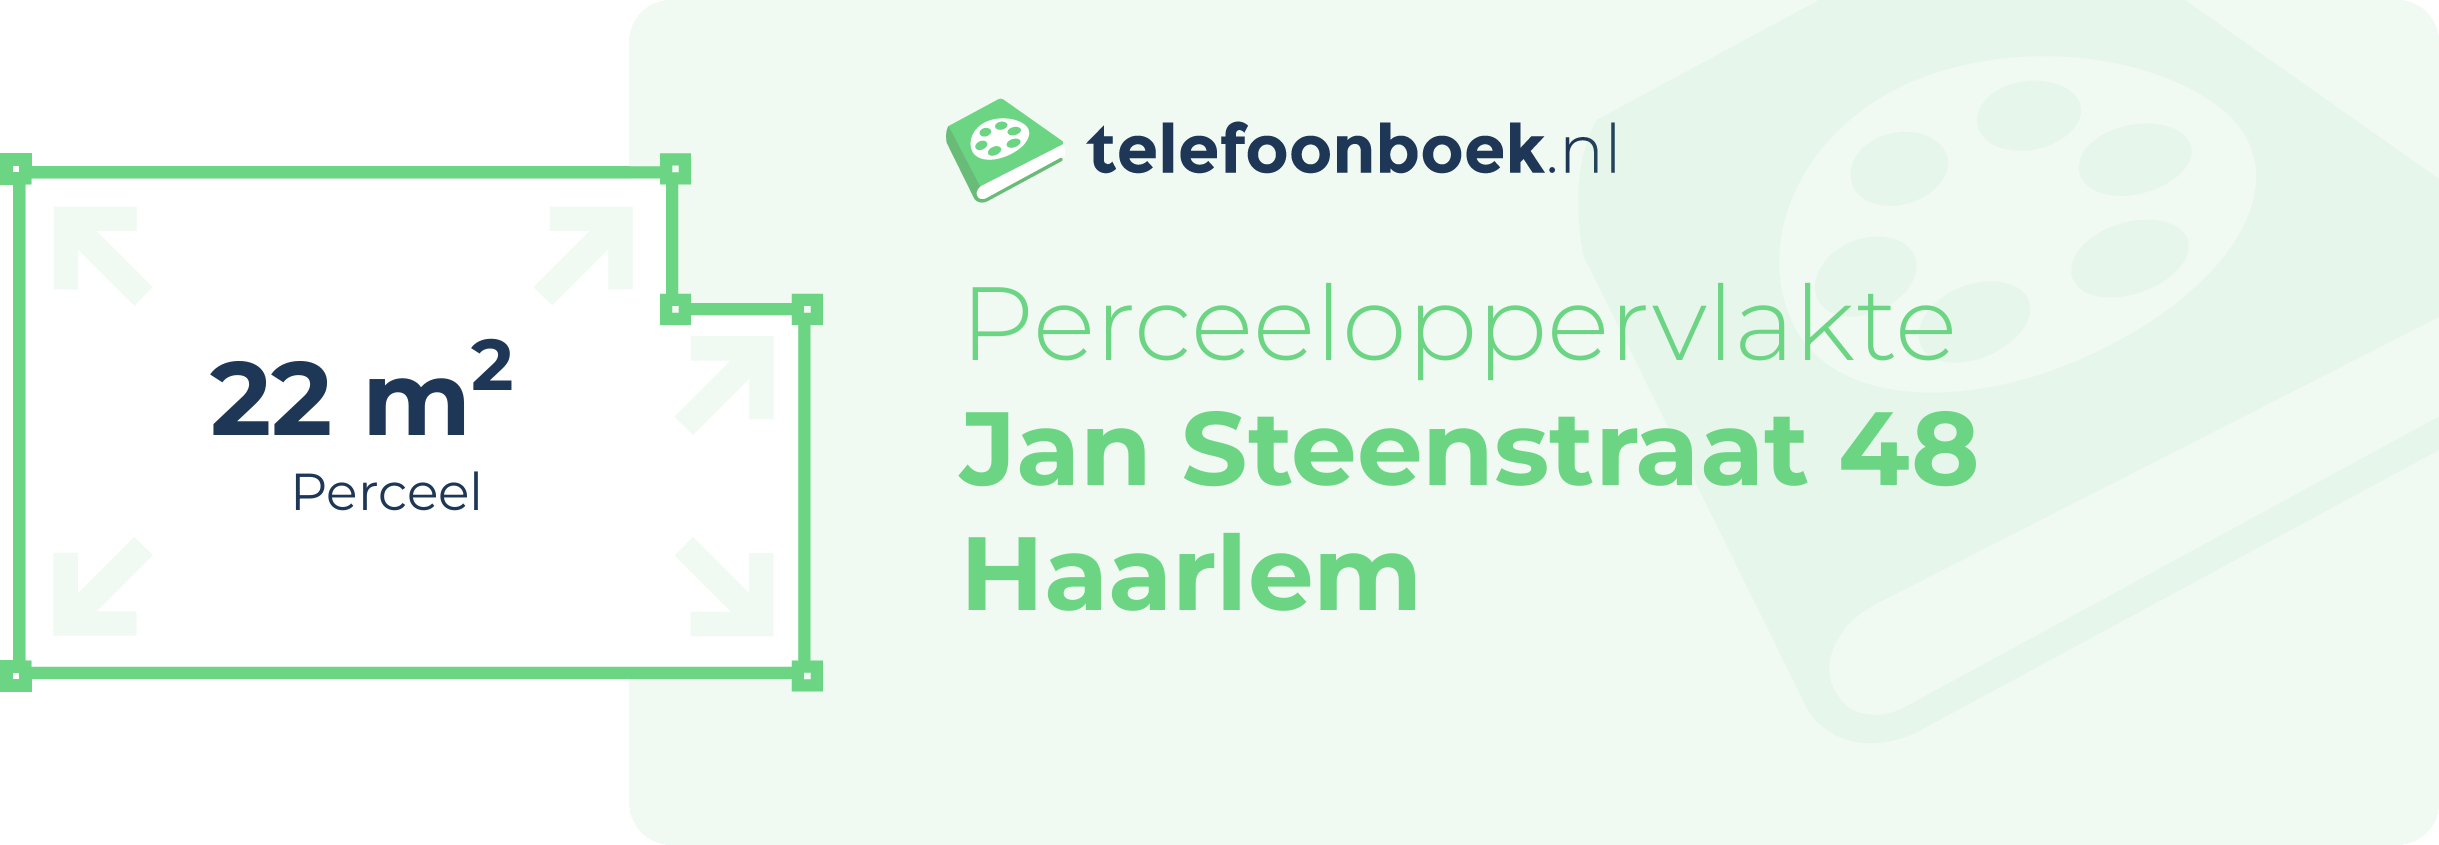 Perceeloppervlakte Jan Steenstraat 48 Haarlem